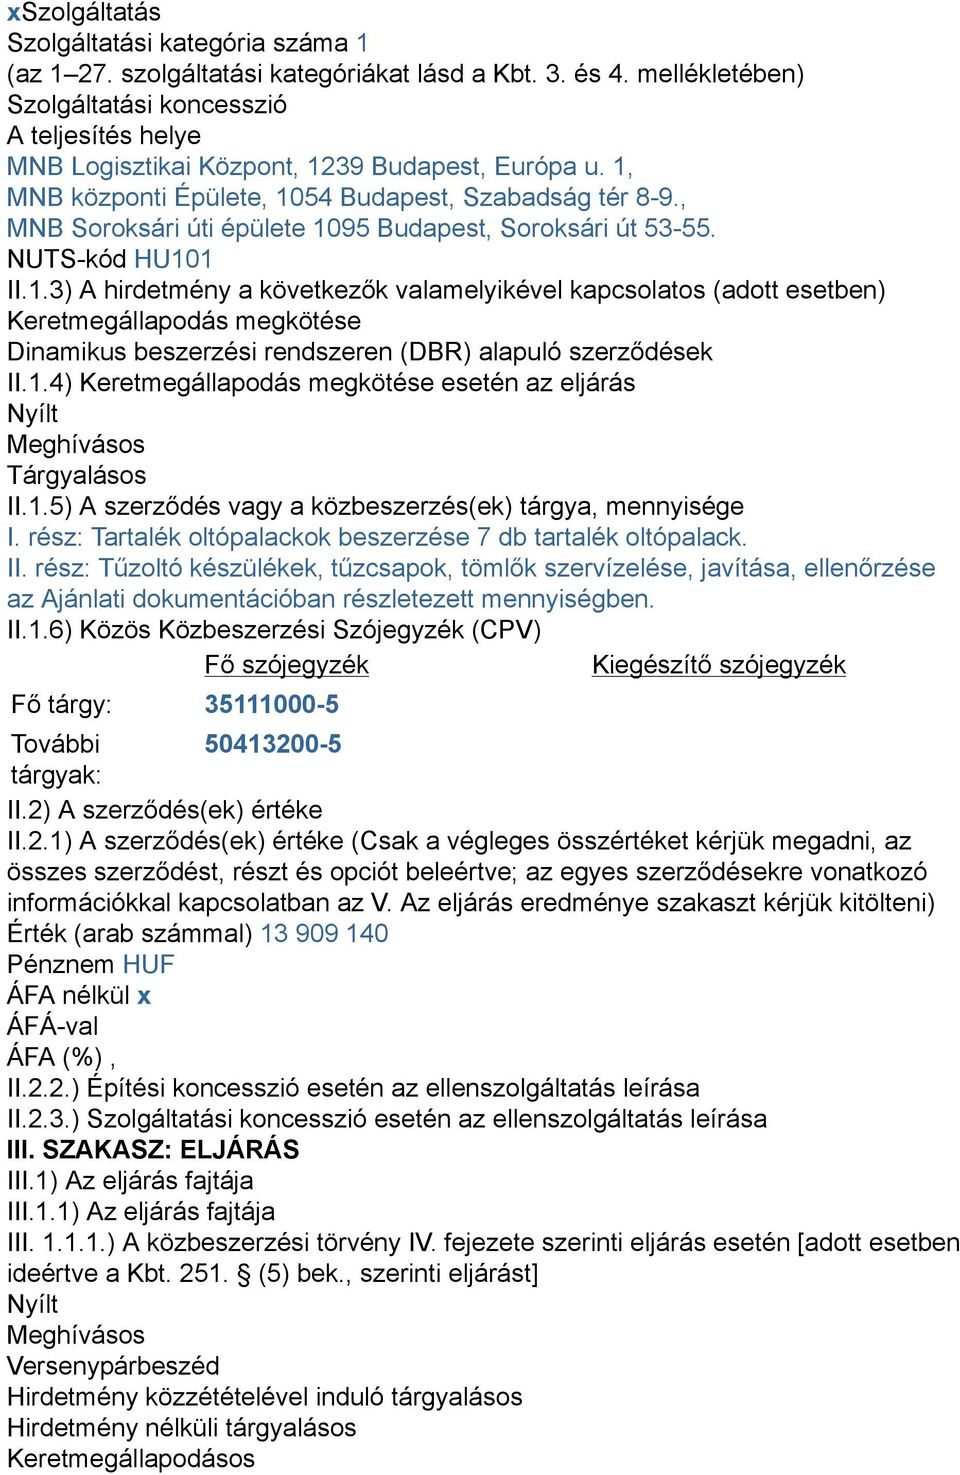 , MNB Soroksári úti épülete 1095 Budapest, Soroksári út 53-55. NUTS-kód HU101 II.1.3) A hirdetmény a következők valamelyikével kapcsolatos (adott esetben) Keretmegállapodás megkötése Dinamikus beszerzési rendszeren (DBR) alapuló szerződések II.